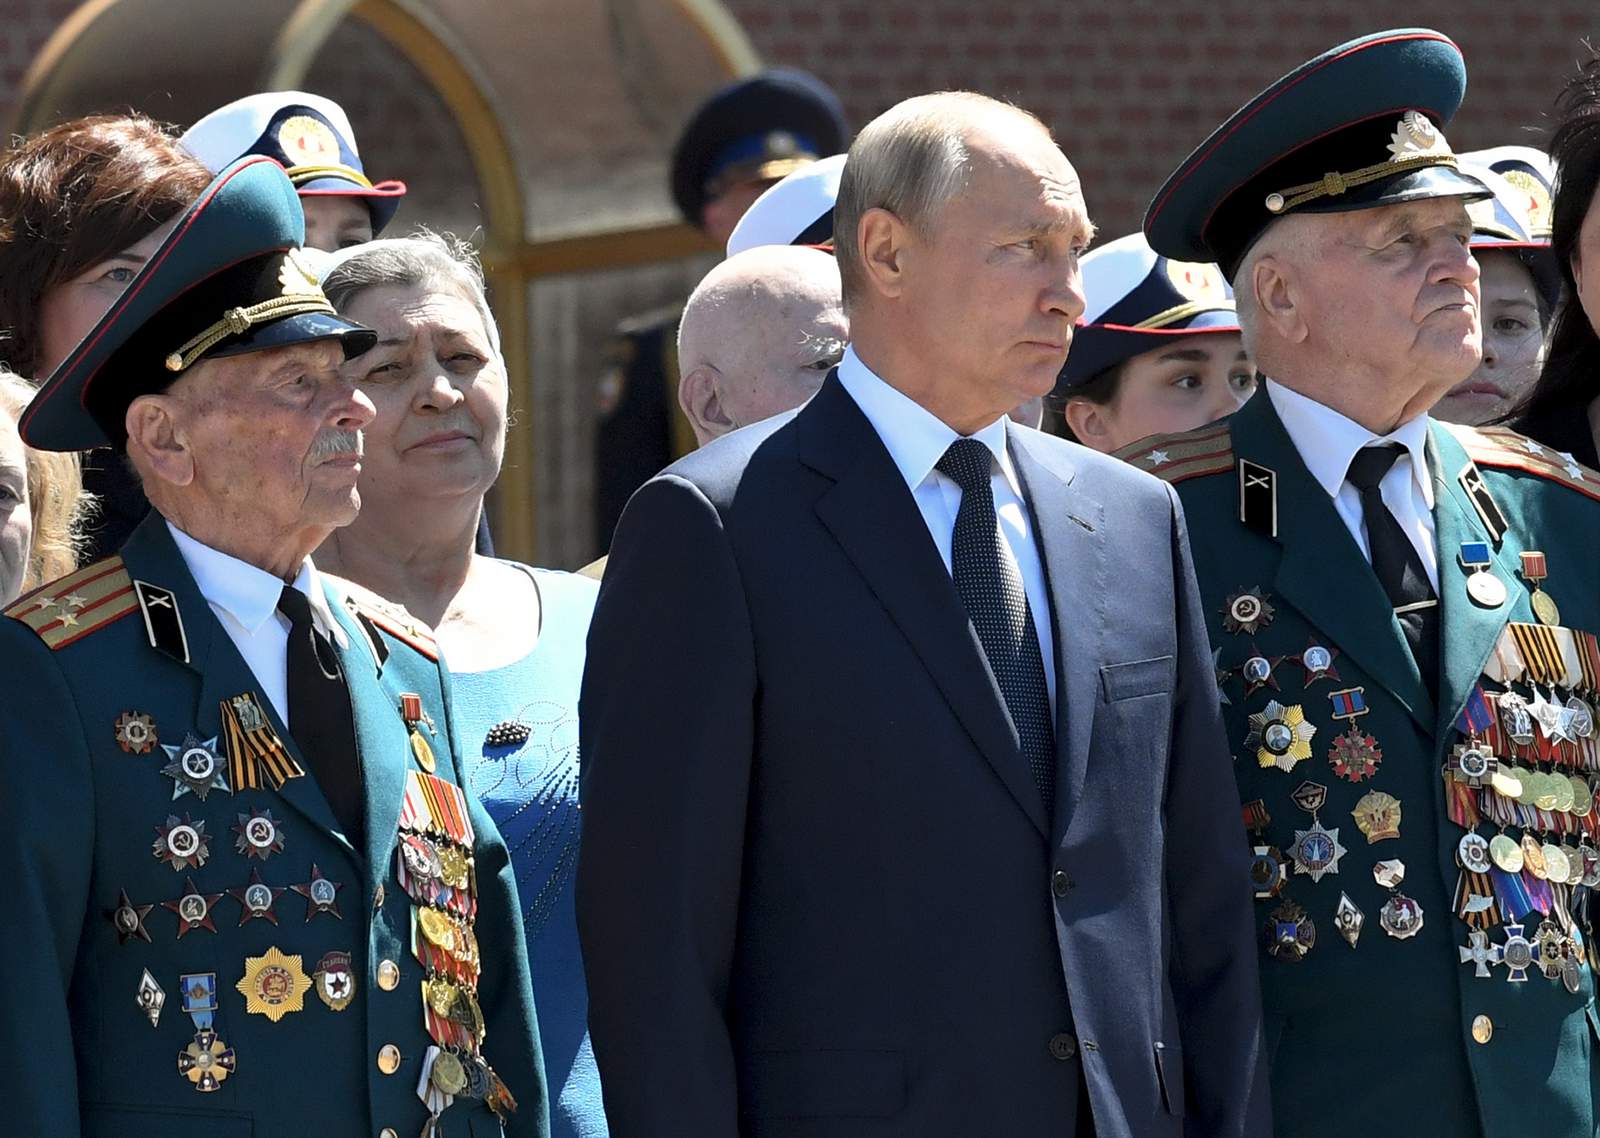 Putin meets with World War II veterans, visits church